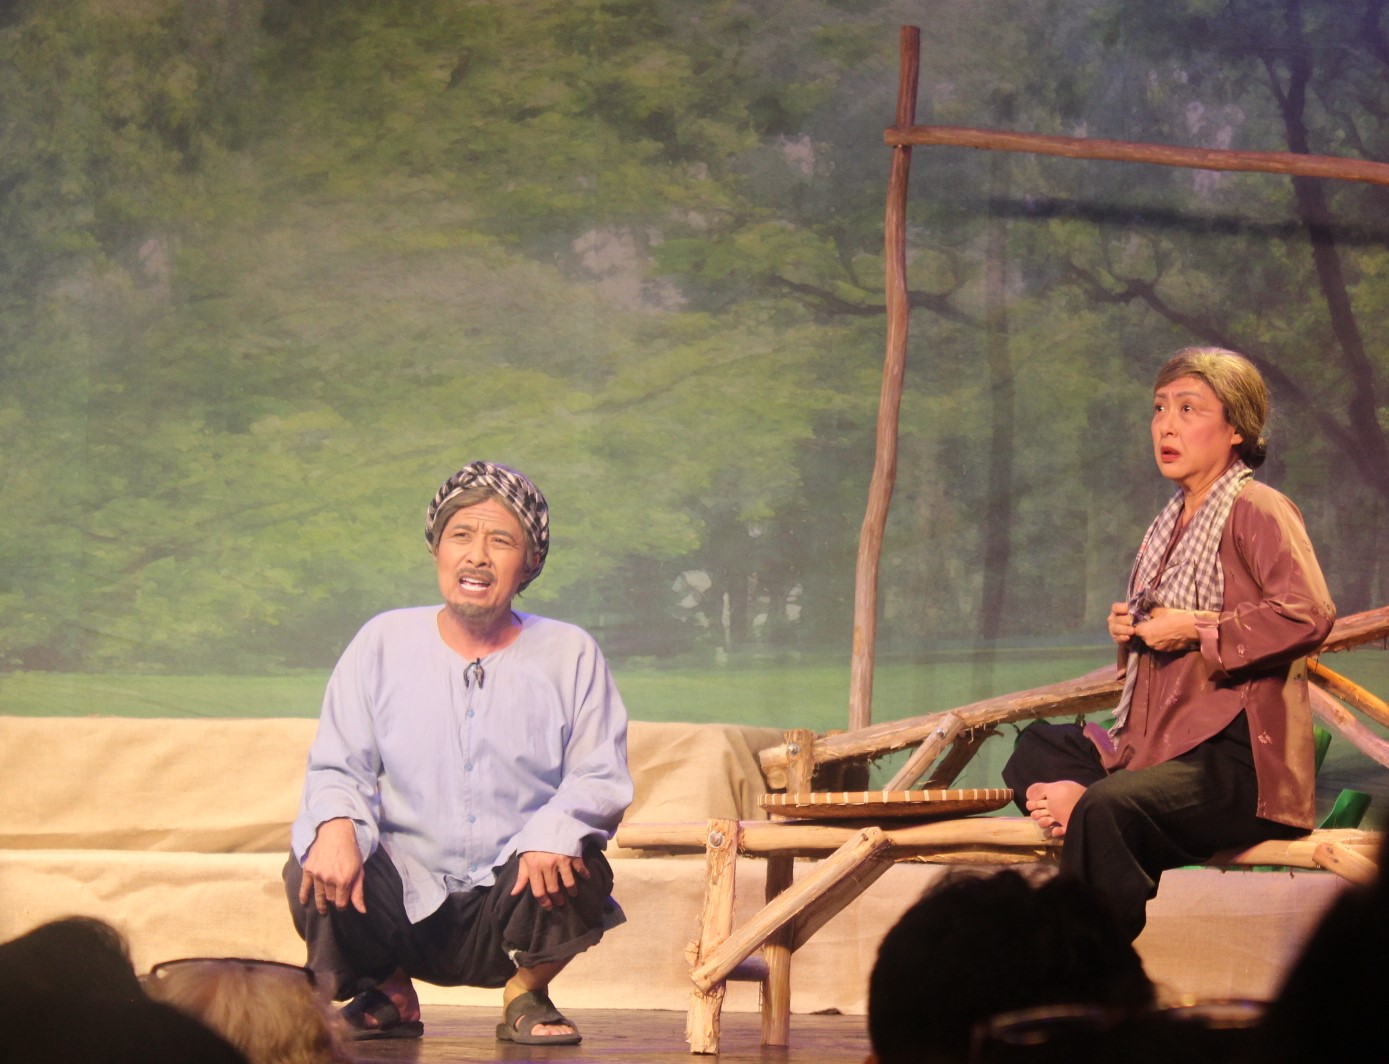 Nghệ sĩ Thanh Thủy (phải) trở lại vai trò đạo diễn và diễn viên chính của Má ơi, út dìa! – phiên bản mới của vở bi kịch Tiếng vạc sành nổi tiếng từ 20 năm trước.